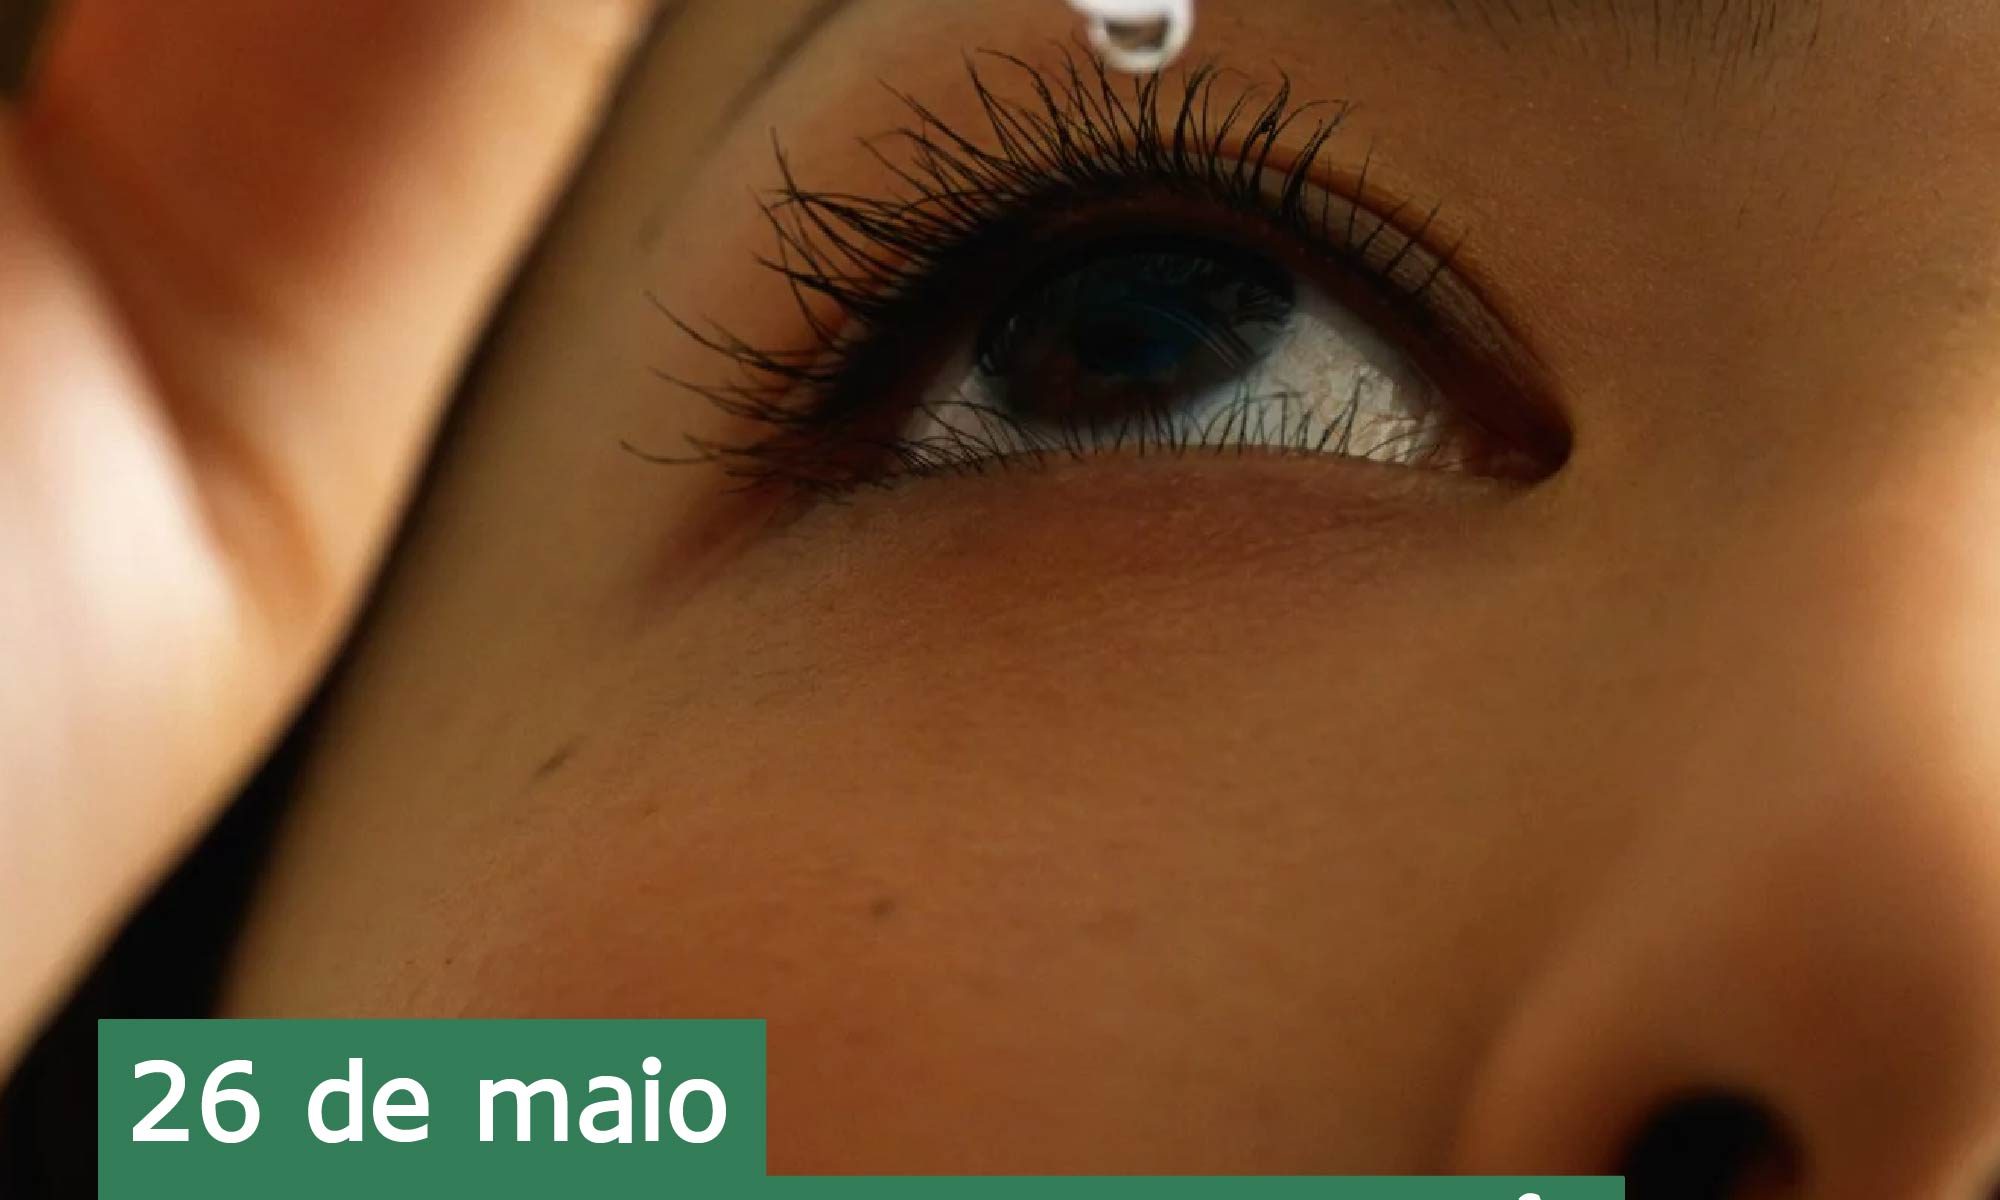 imagem do olho de uma mulher pingando um colírio. Está escrito: "26 de maio Dia Nacional de combate à cegeuira pelo Glaucoma". Há as logos da Retina Brasil e da Novartis.